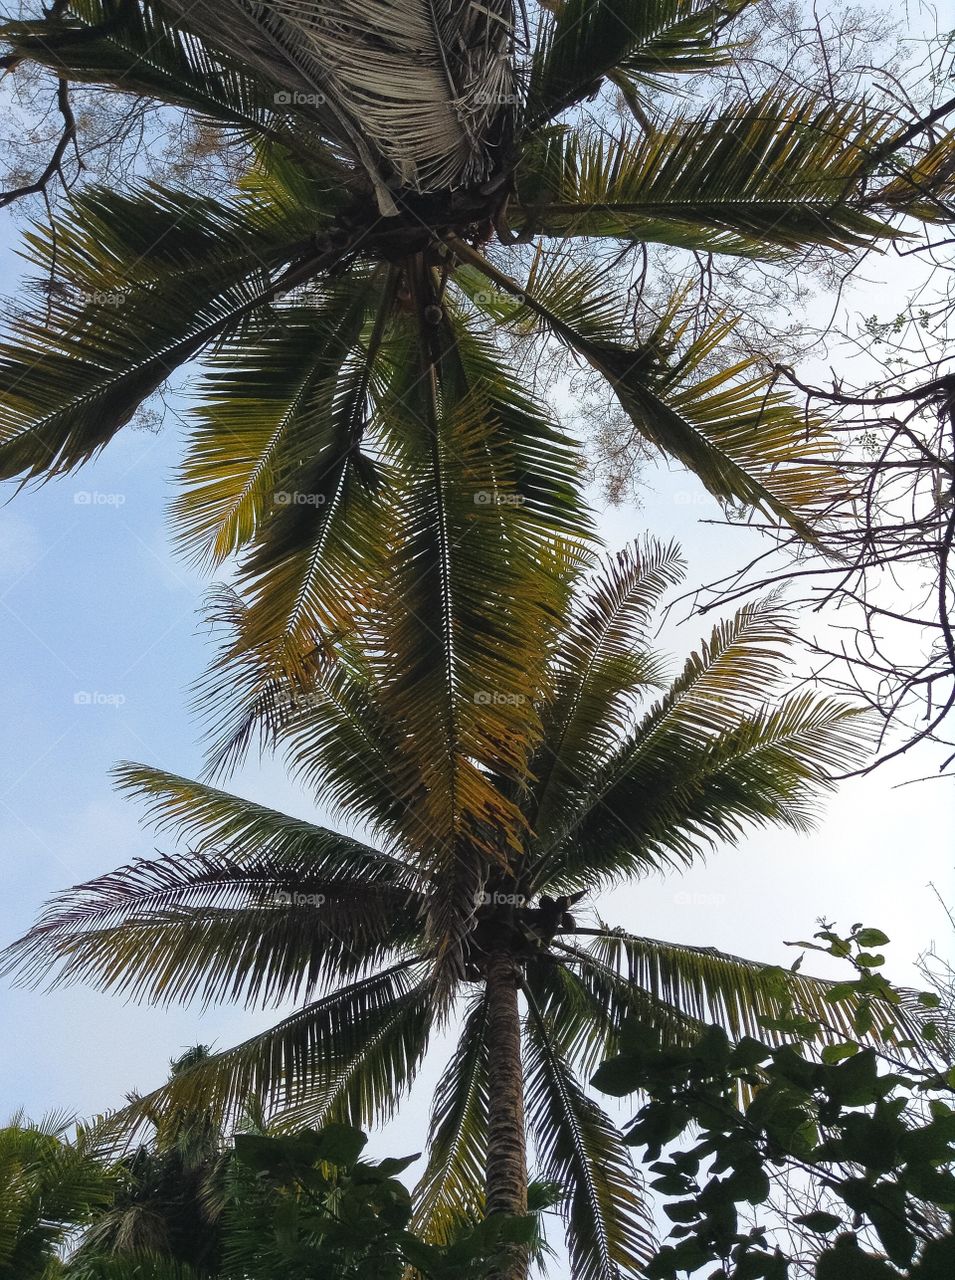 Top of two palm trees in Islas de Rosario, Cartagena, Colombia
